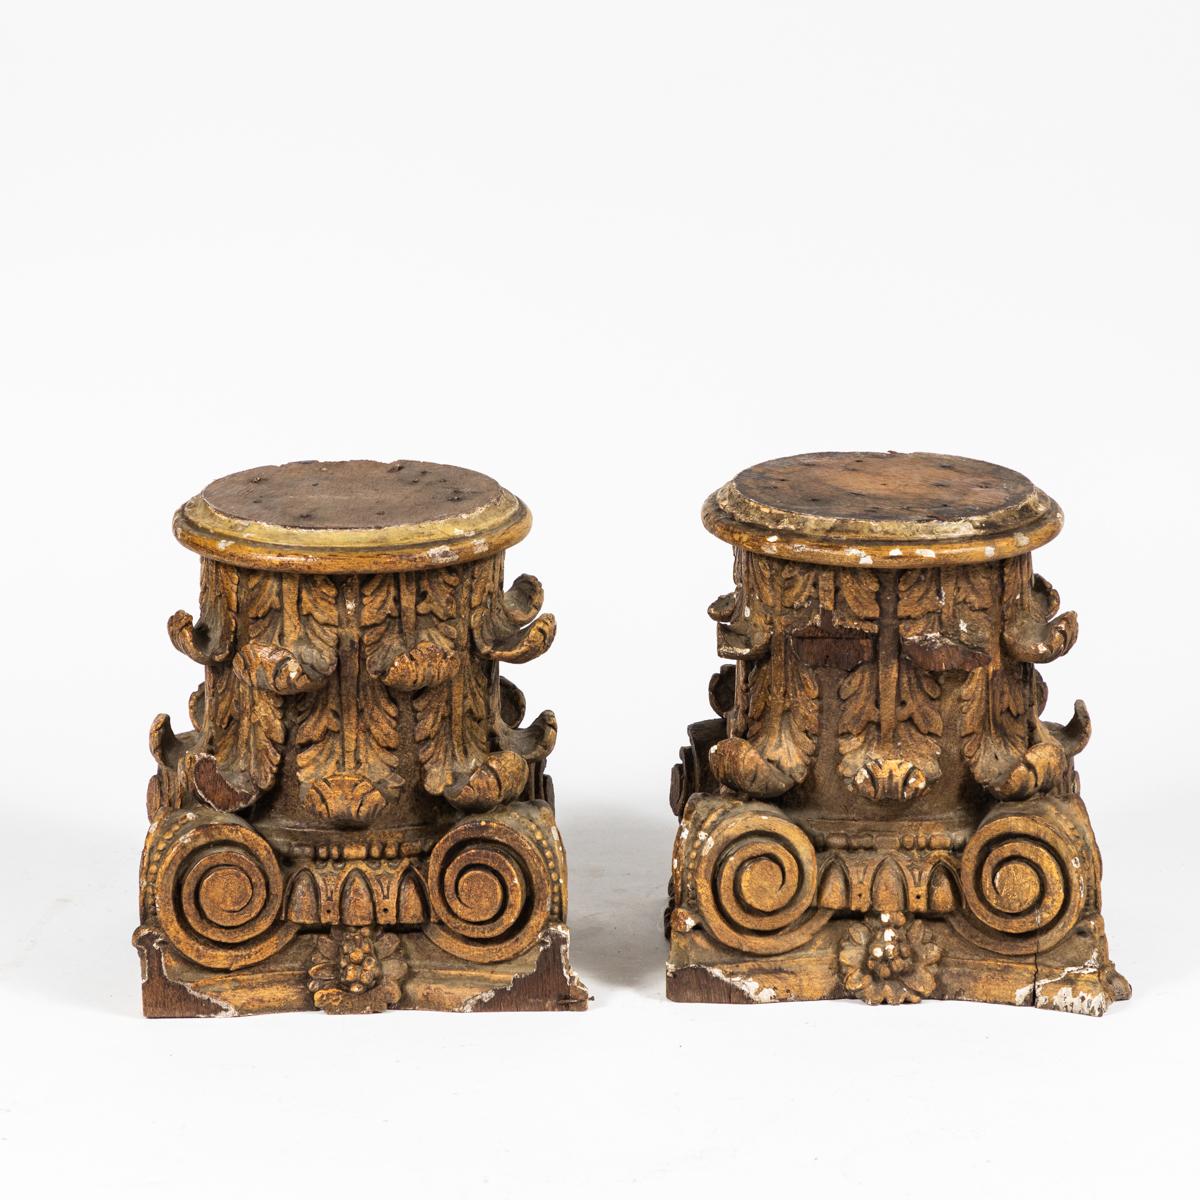 Une paire de chapiteaux de colonne en bois du 19ème siècle provenant de France. Ces chapiteaux de colonne dans le style composite seraient parfaits comme accessoire de bureau ou sur une cheminée. La finition légèrement usée, juxtaposée au style